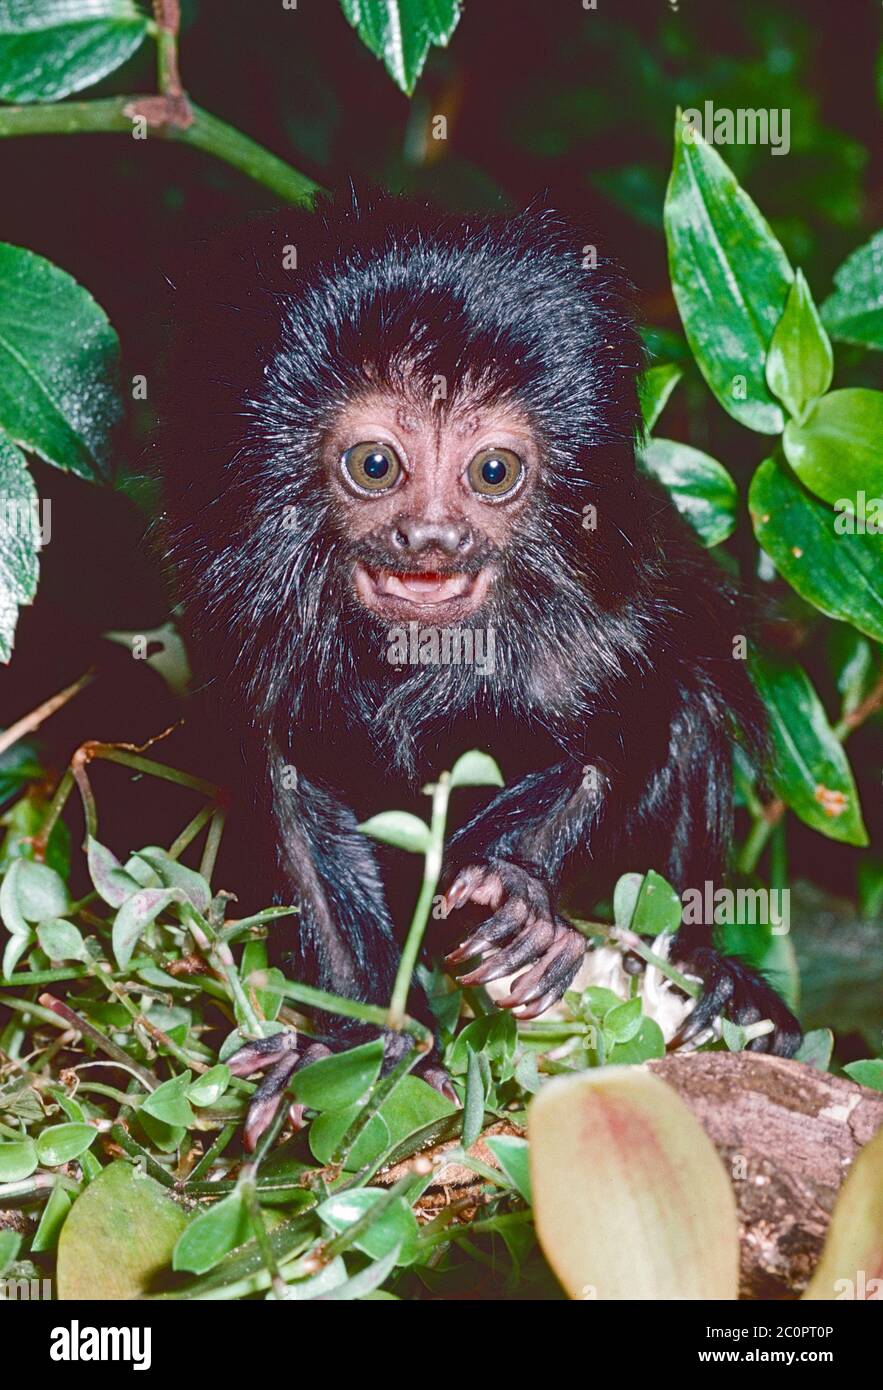 Jeune singe de Goeldi (Callimoco goeldii) du bassin de la haute-Amazonie en Amérique du Sud-Ouest. Vulnérable. Banque D'Images